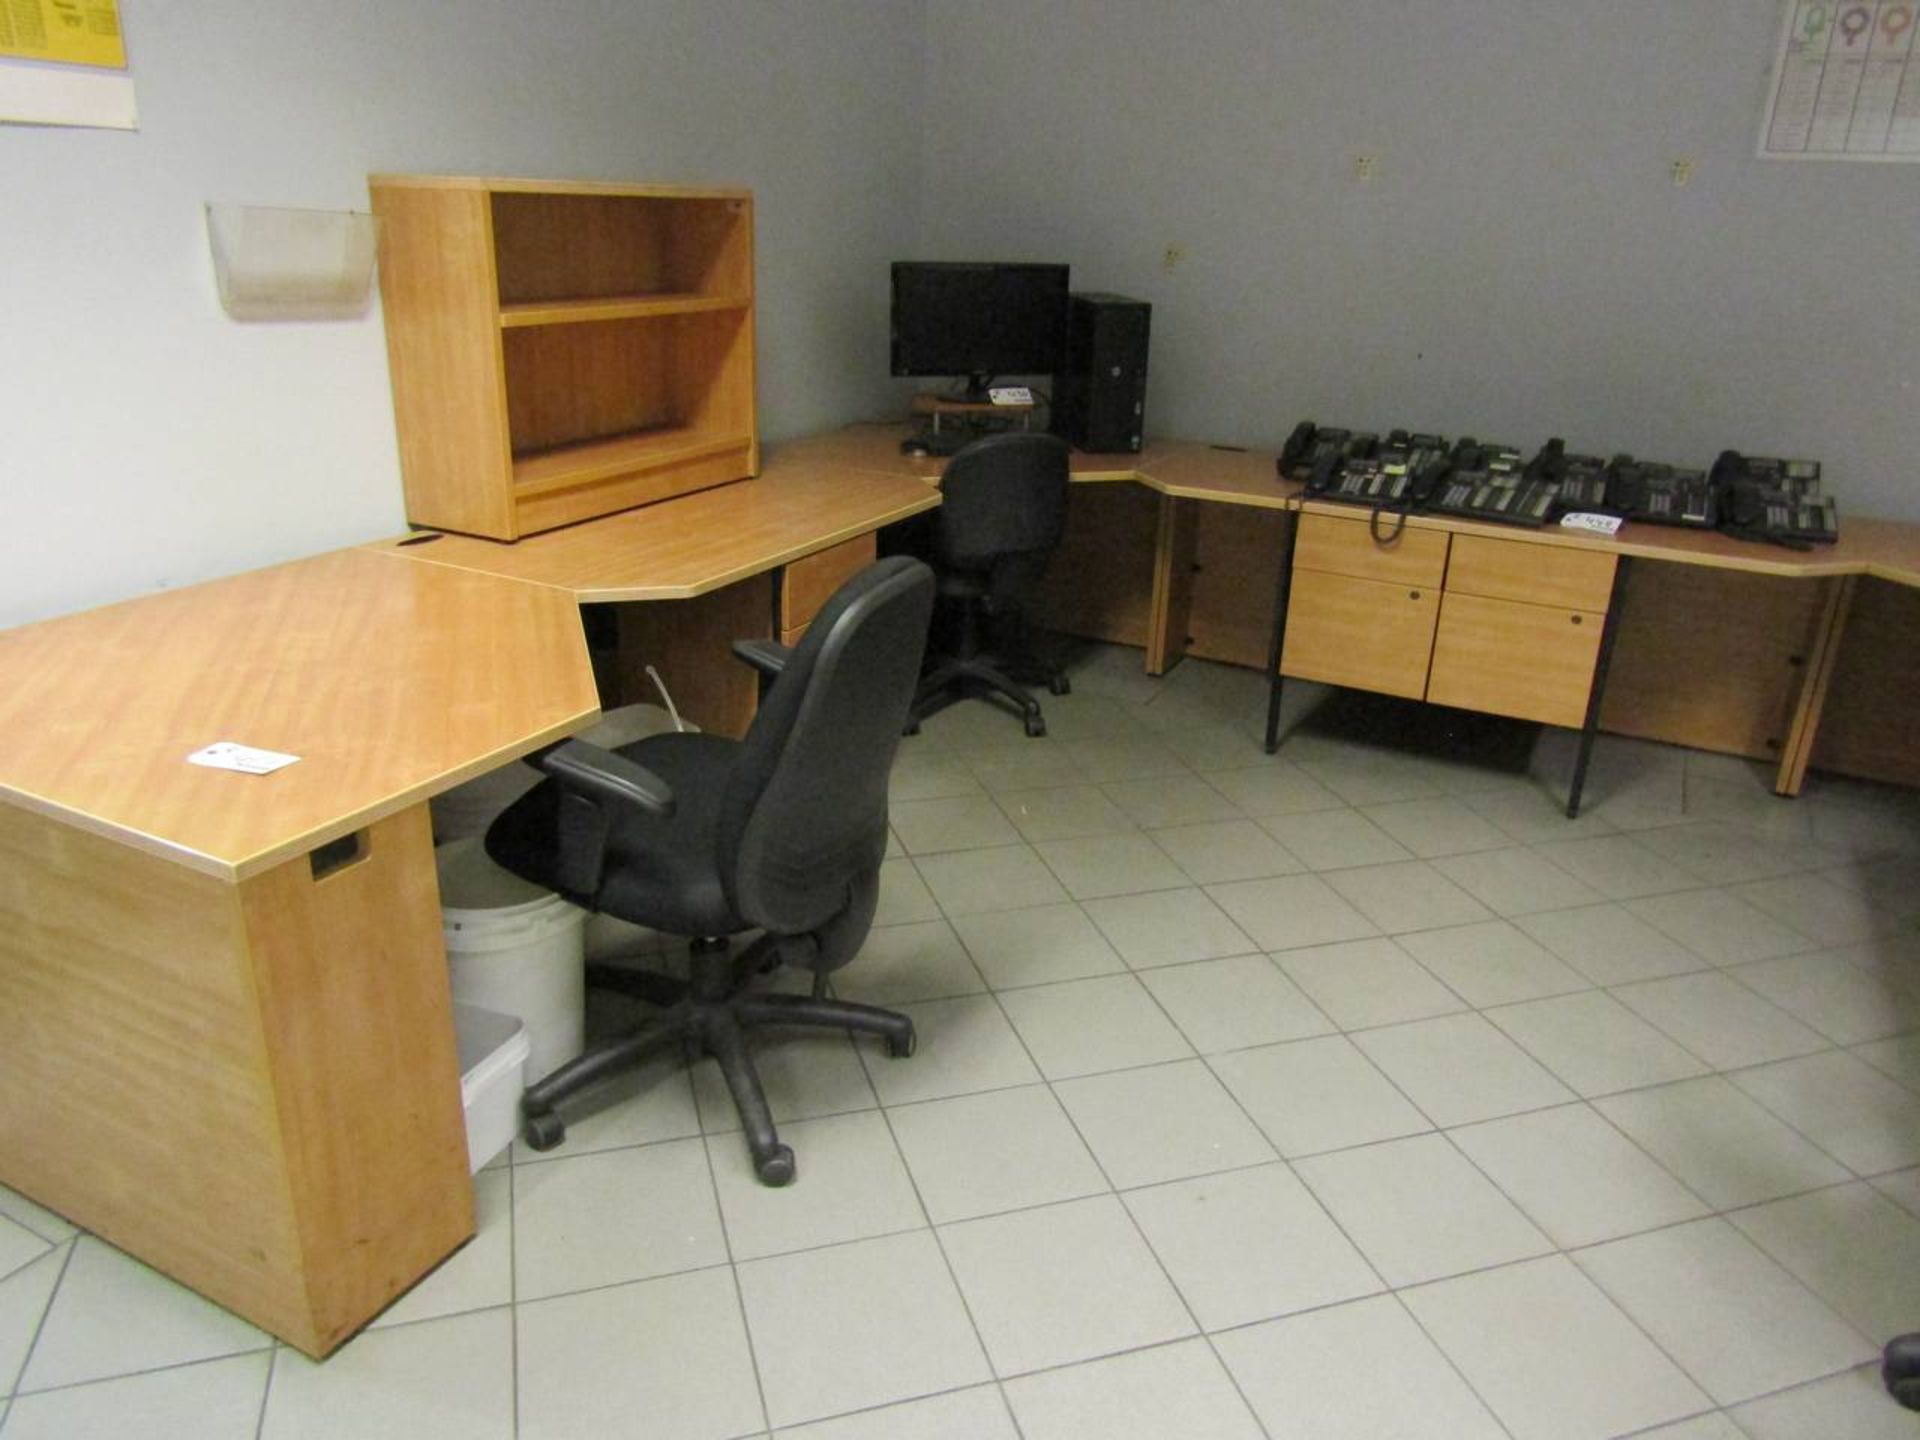 4 Desk Work Station